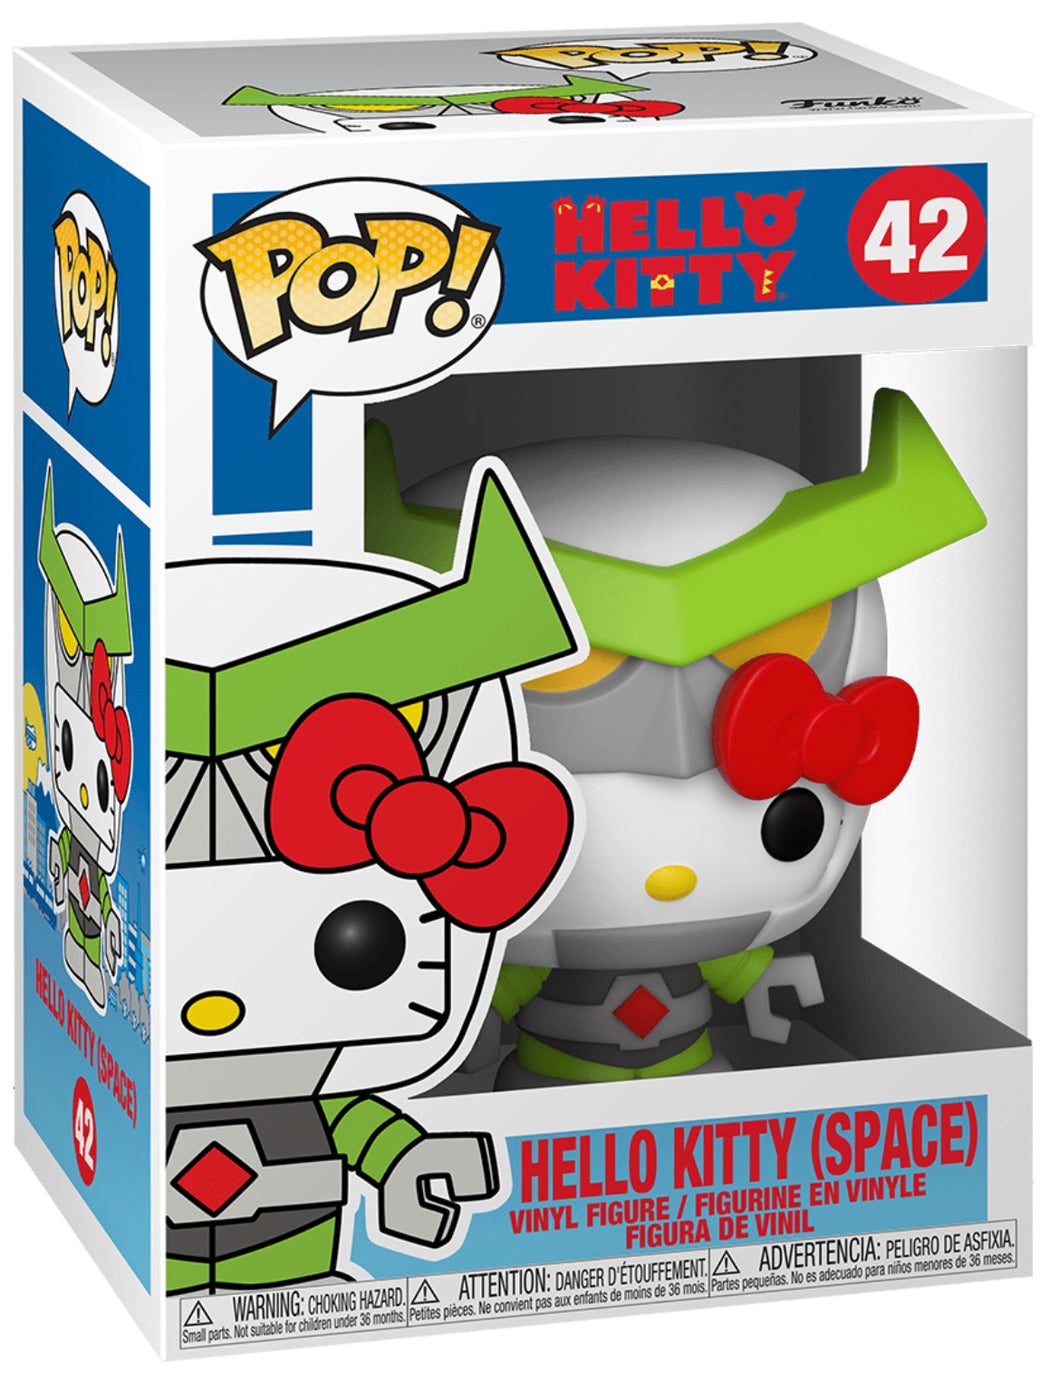 POP! Sanrio: 42 Hello Kitty/Kaiju, Hello Kitty (Space)